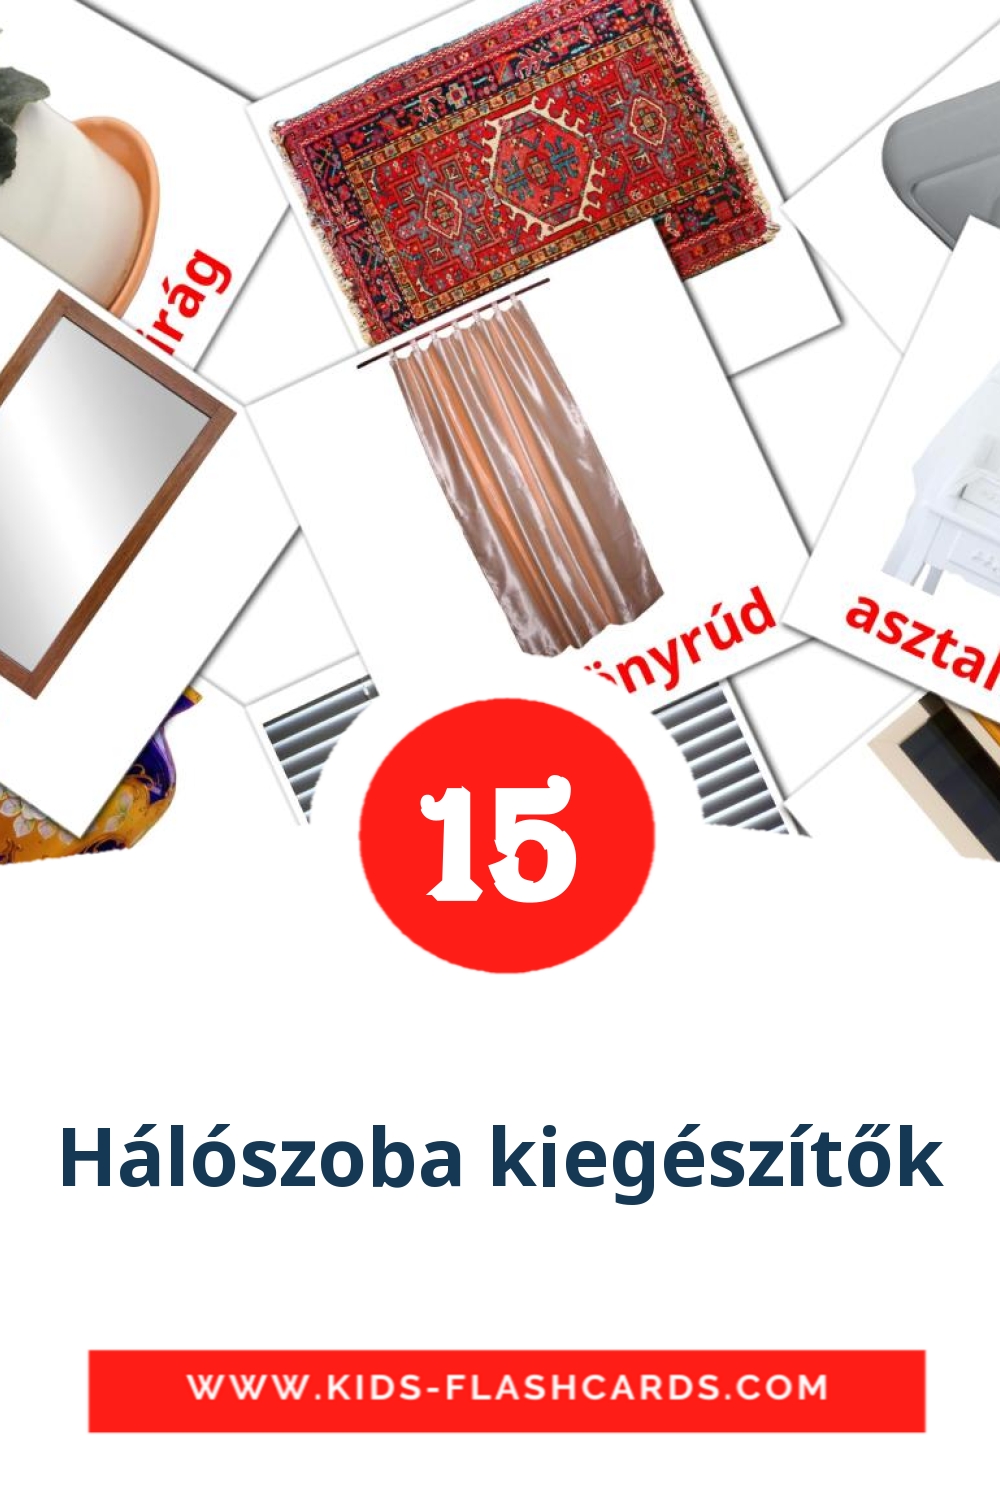 15 cartes illustrées de Hálószoba kiegészítők pour la maternelle en hongrois